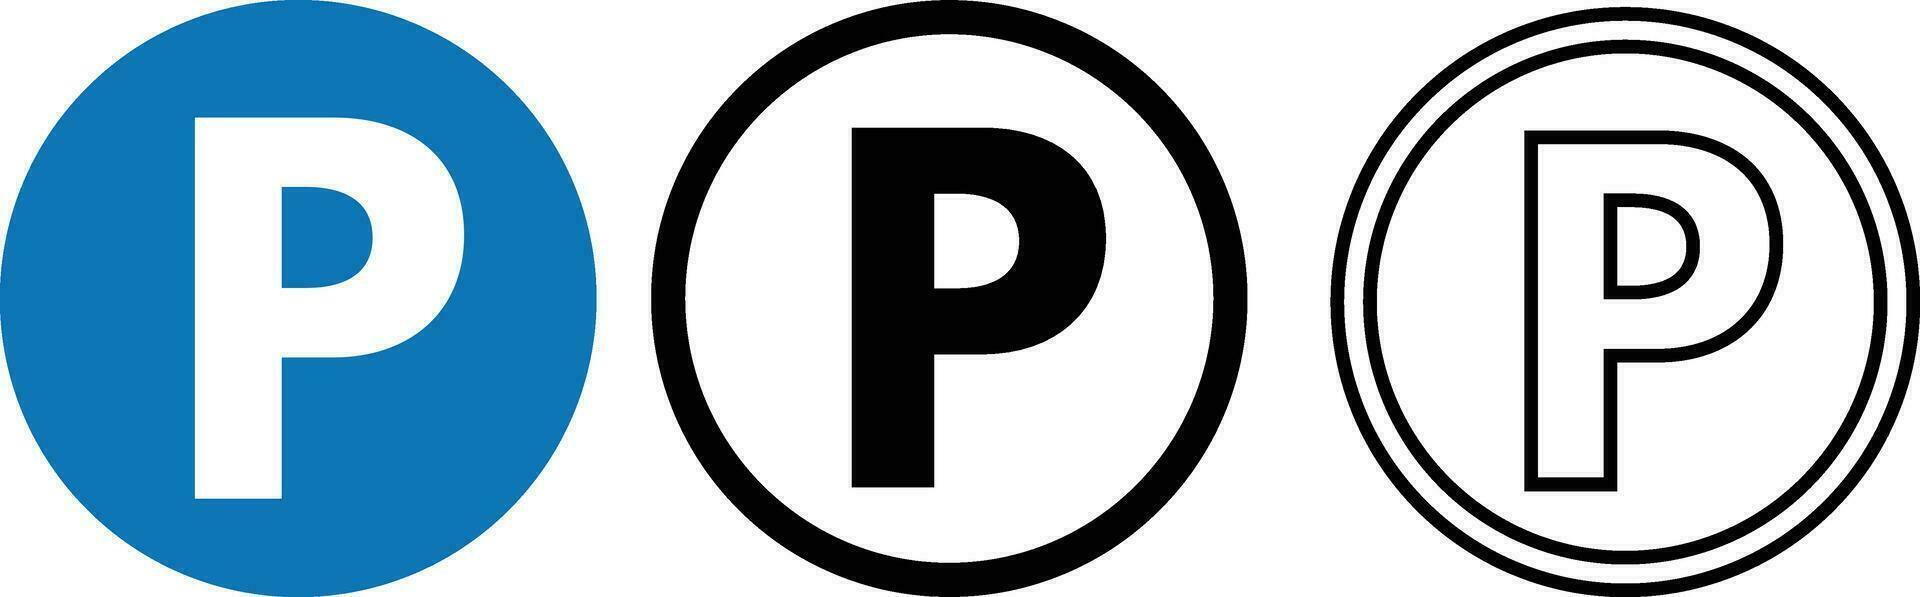 Parkplatz Symbol einstellen im 3 Stile . Auto Parkplatz Symbol Vektor . Parkplatz und der Verkehr Zeichen isoliert auf Weiß Hintergrund